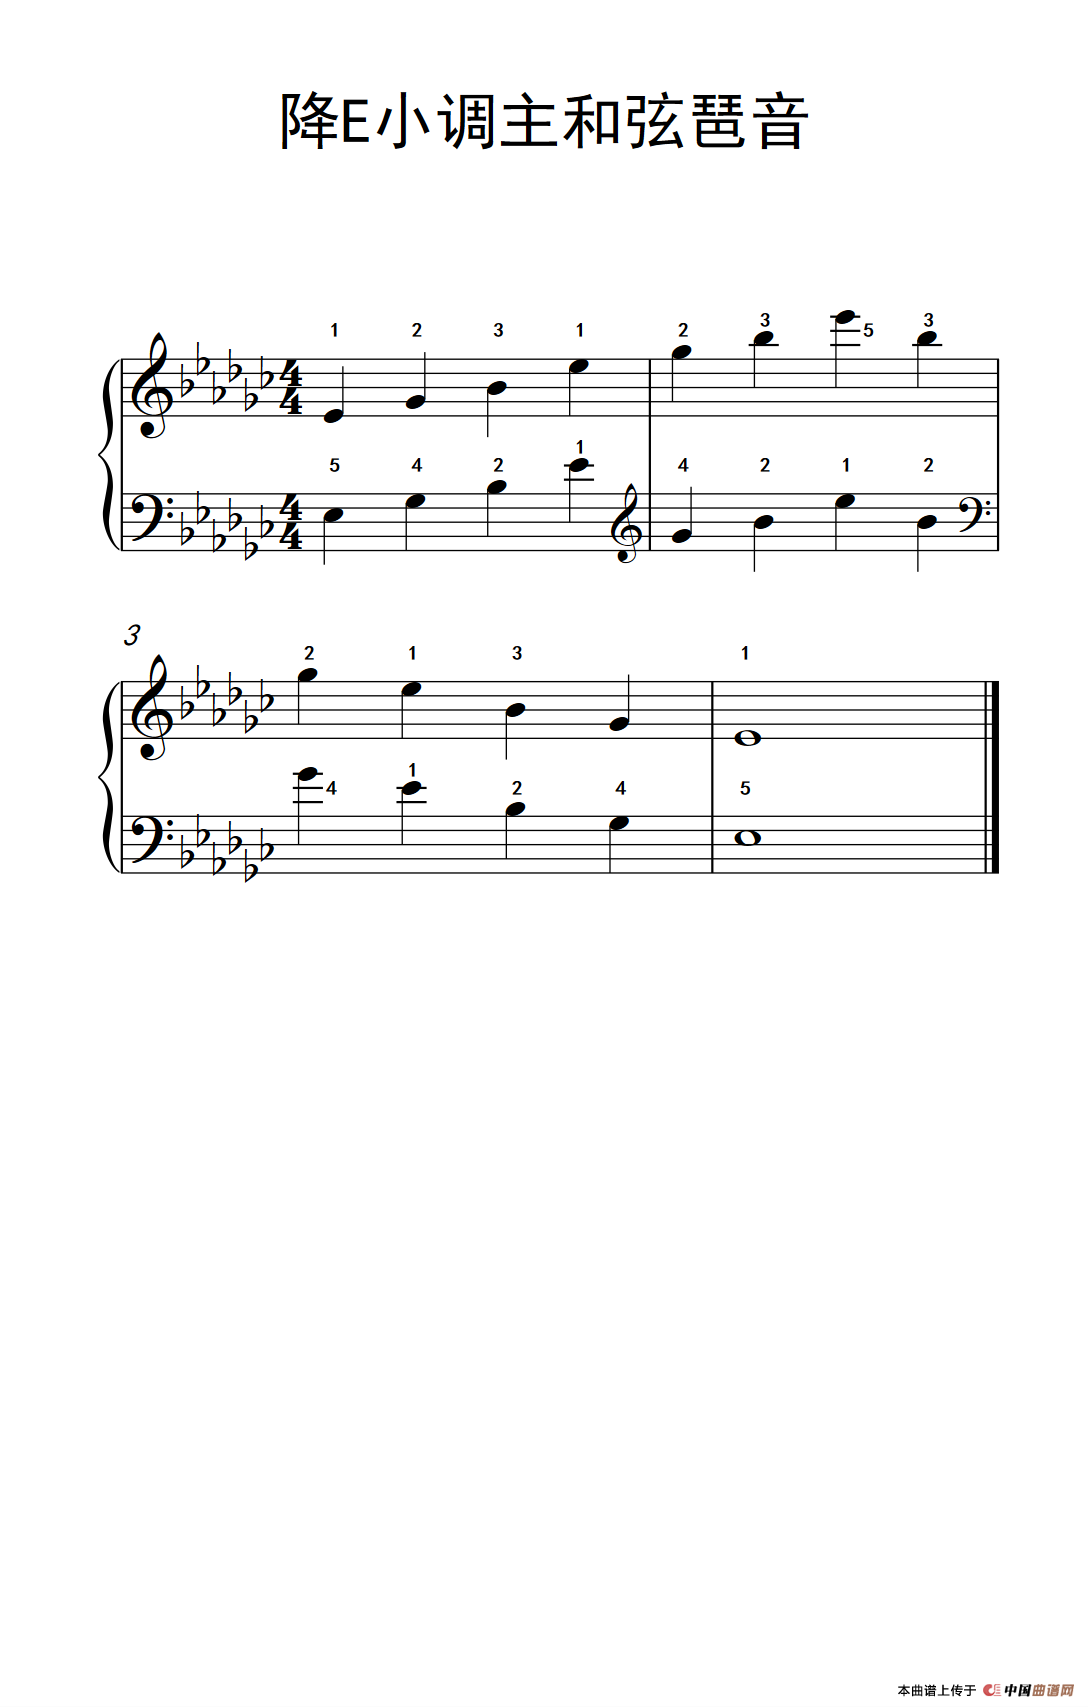 《降E小调主和弦琶音》钢琴曲谱图分享